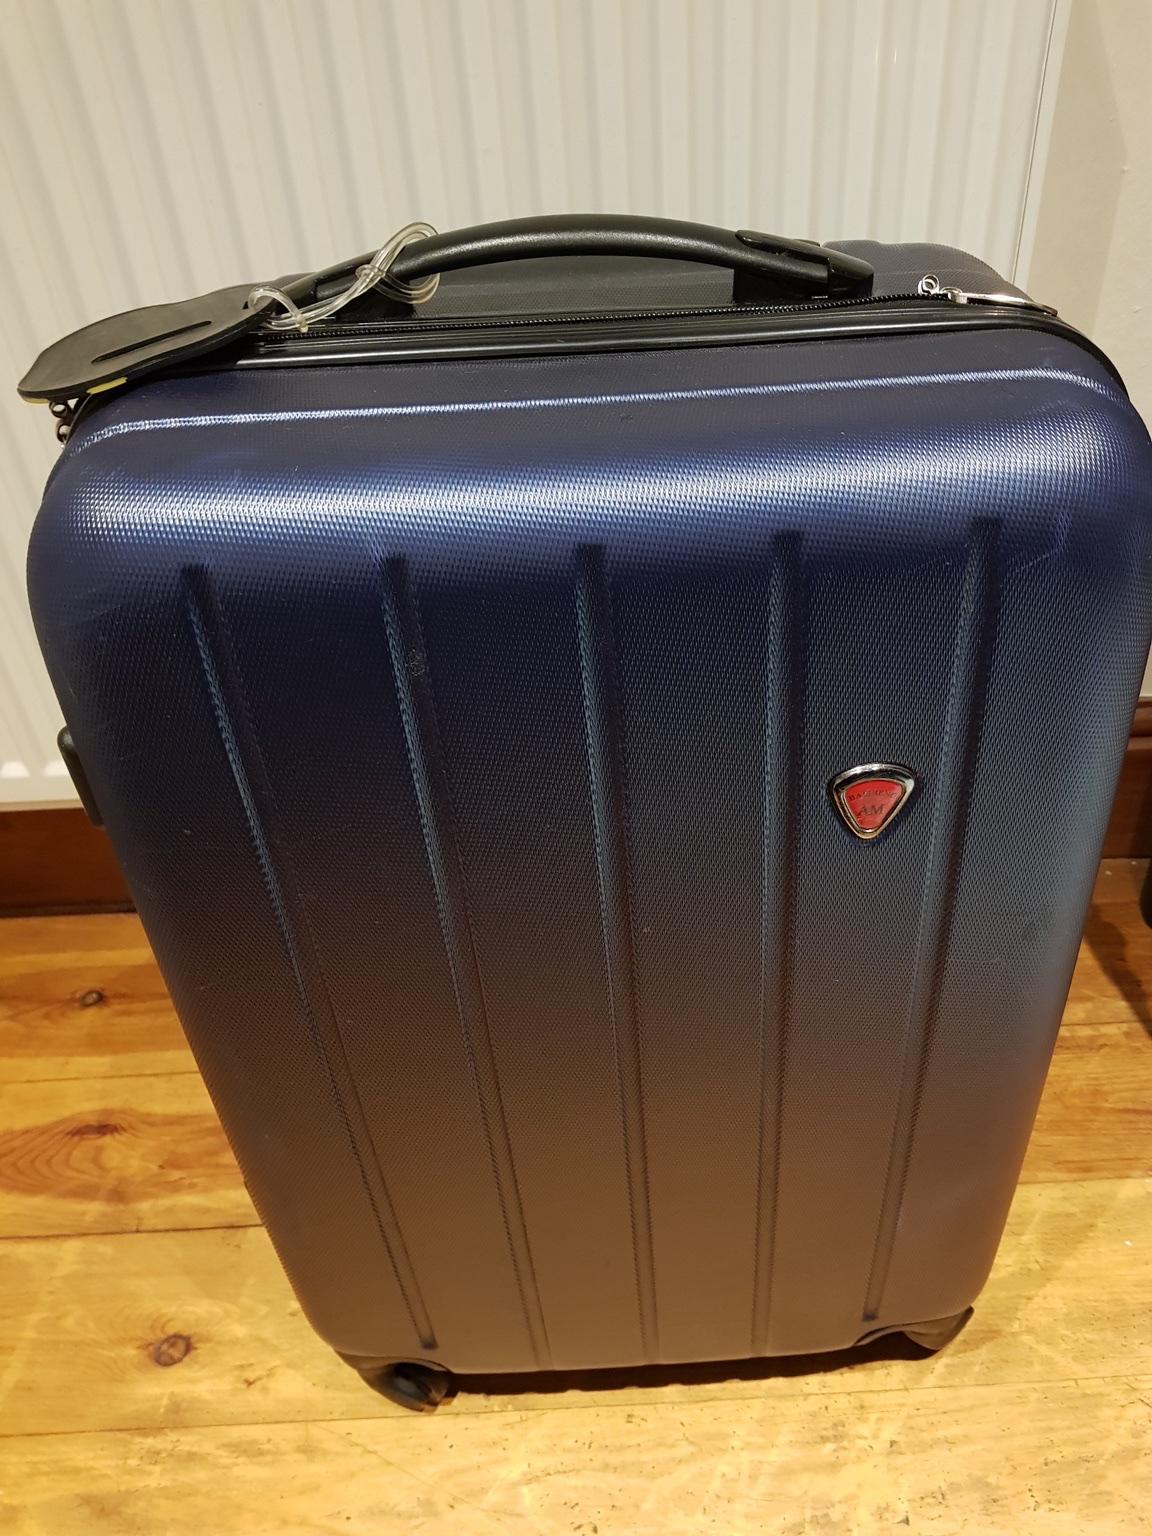 15kg travel bag